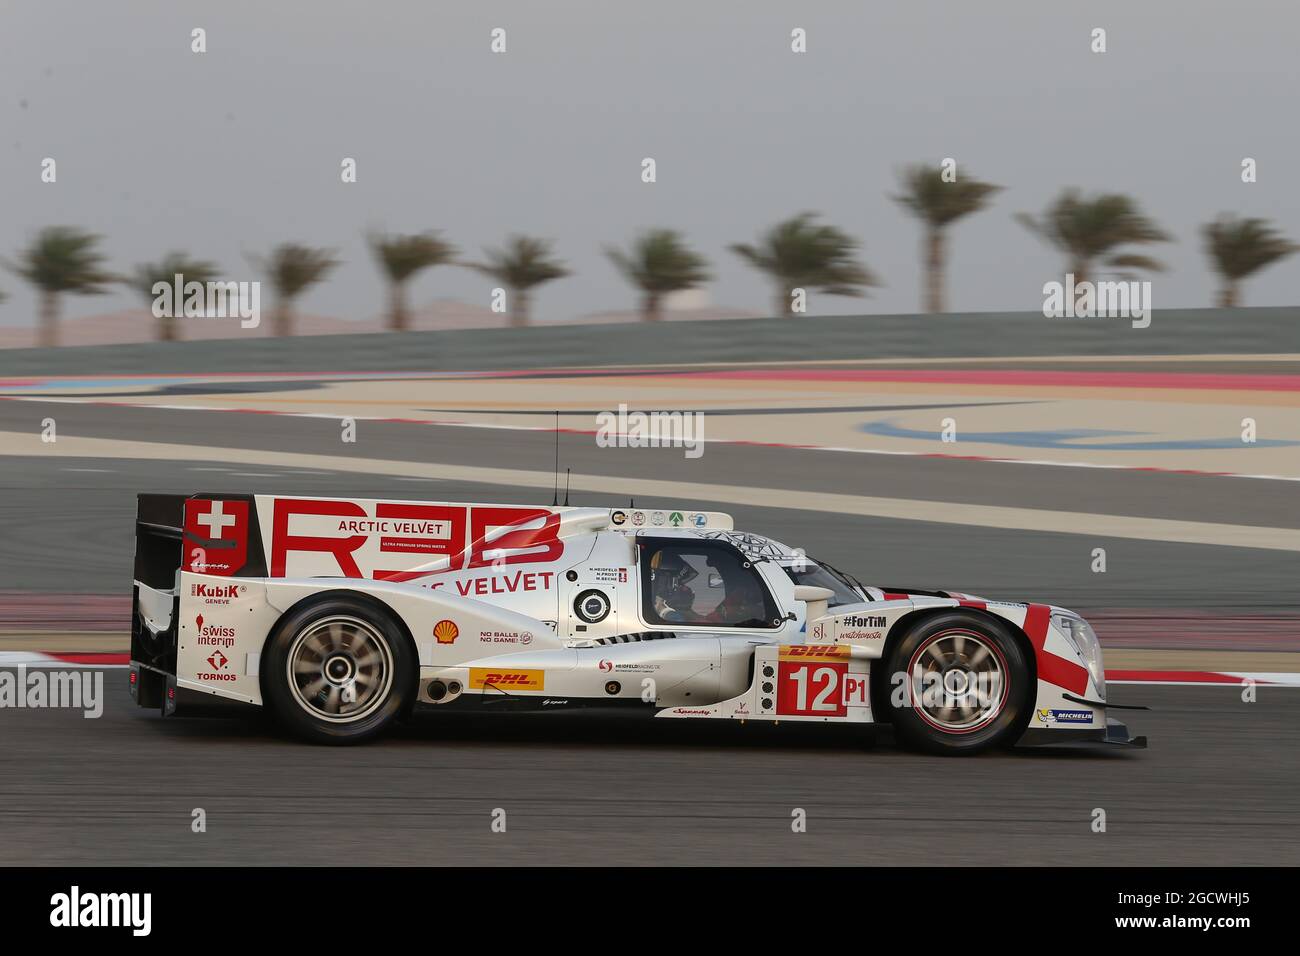 Nicolas Prost (FRA) / Mathias Beche (SUI) #12 Rebellion Racing Rebellion R1 Toyota. Championnat du monde d'endurance FIA, Round 8, jeudi 19 novembre 2015. Sakhir, Bahreïn. Banque D'Images